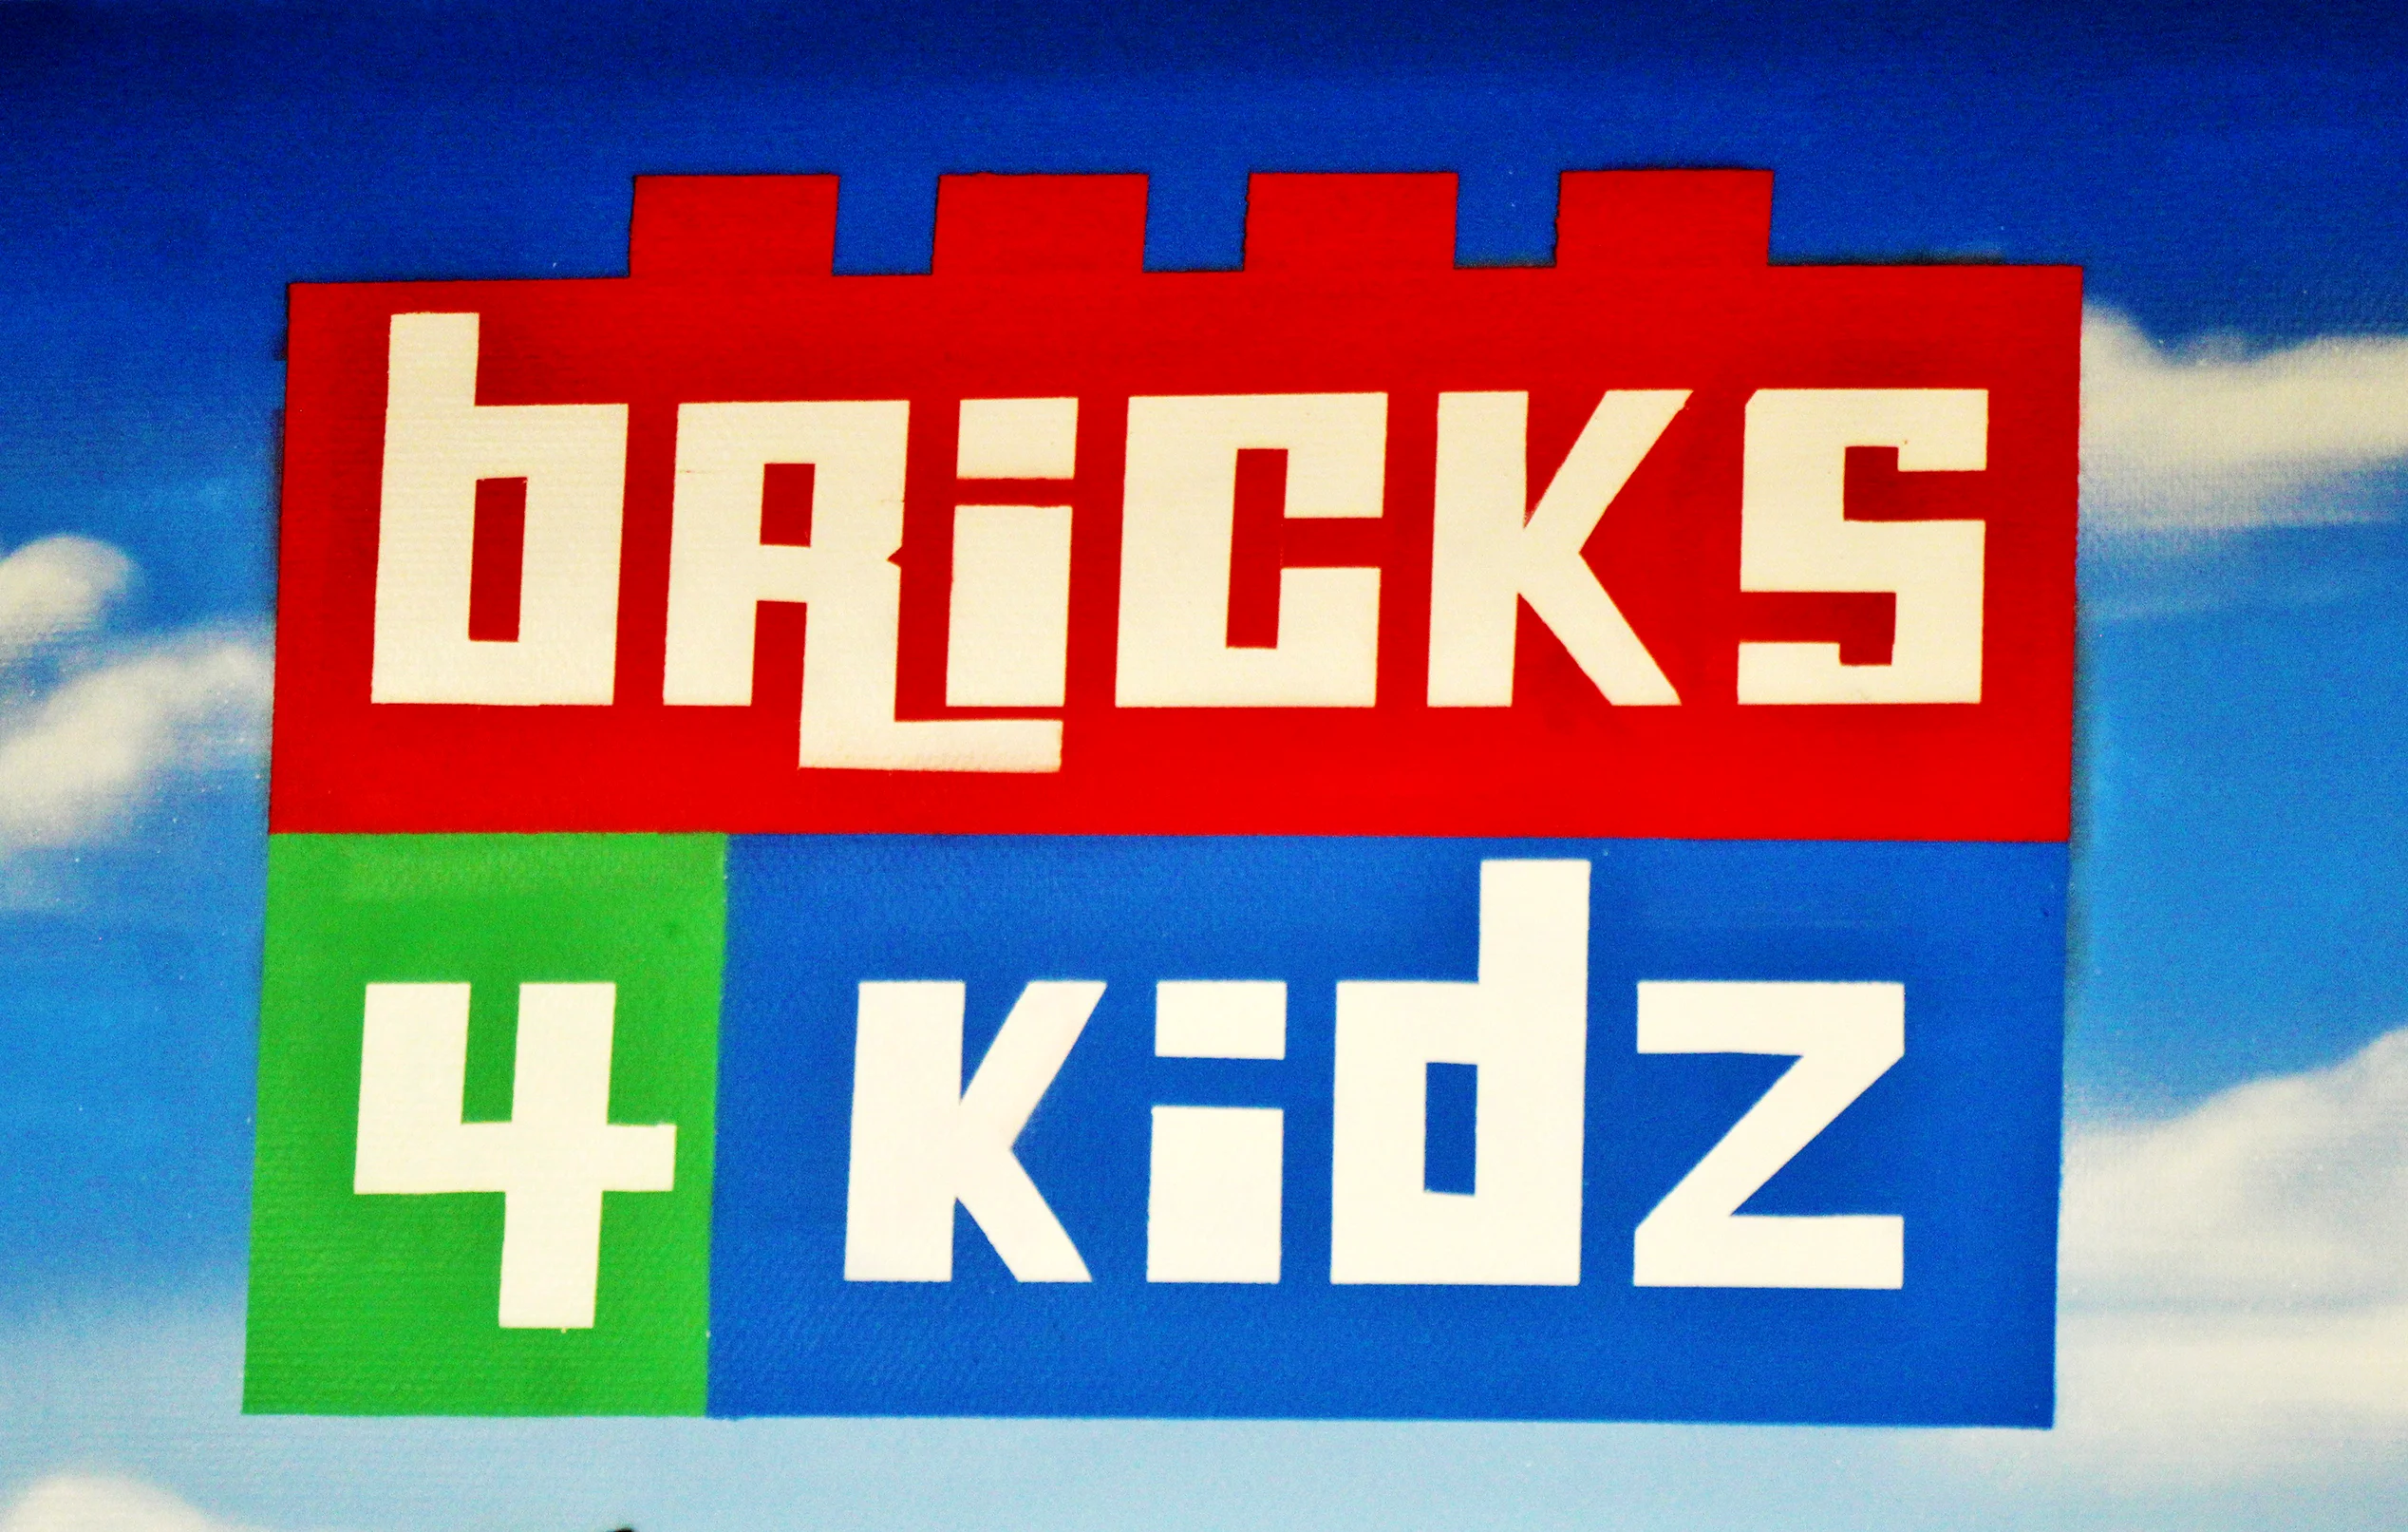 logo bricks 4 kidz marseille